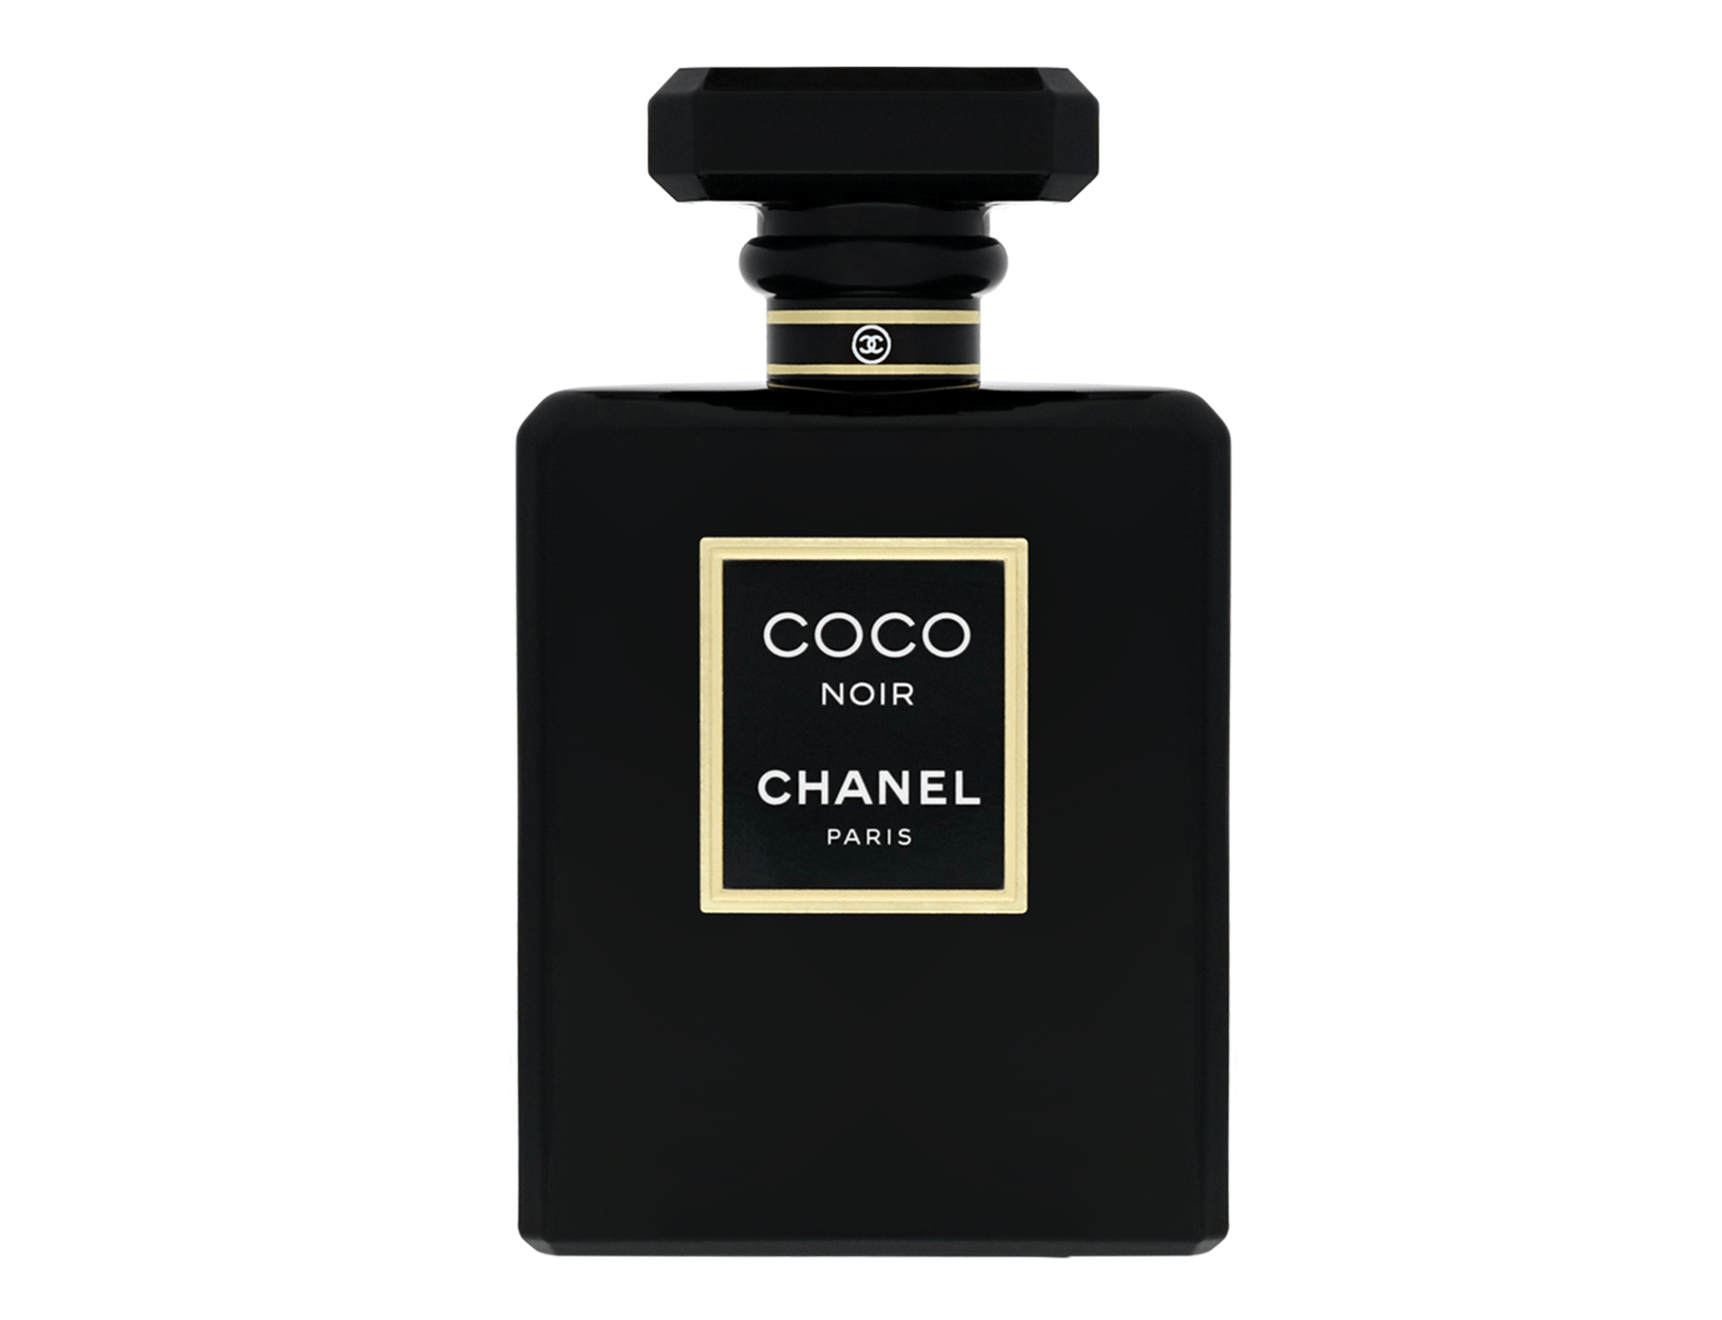 Chanel - Coco Noir, (シャネル - ココ ヌワール)